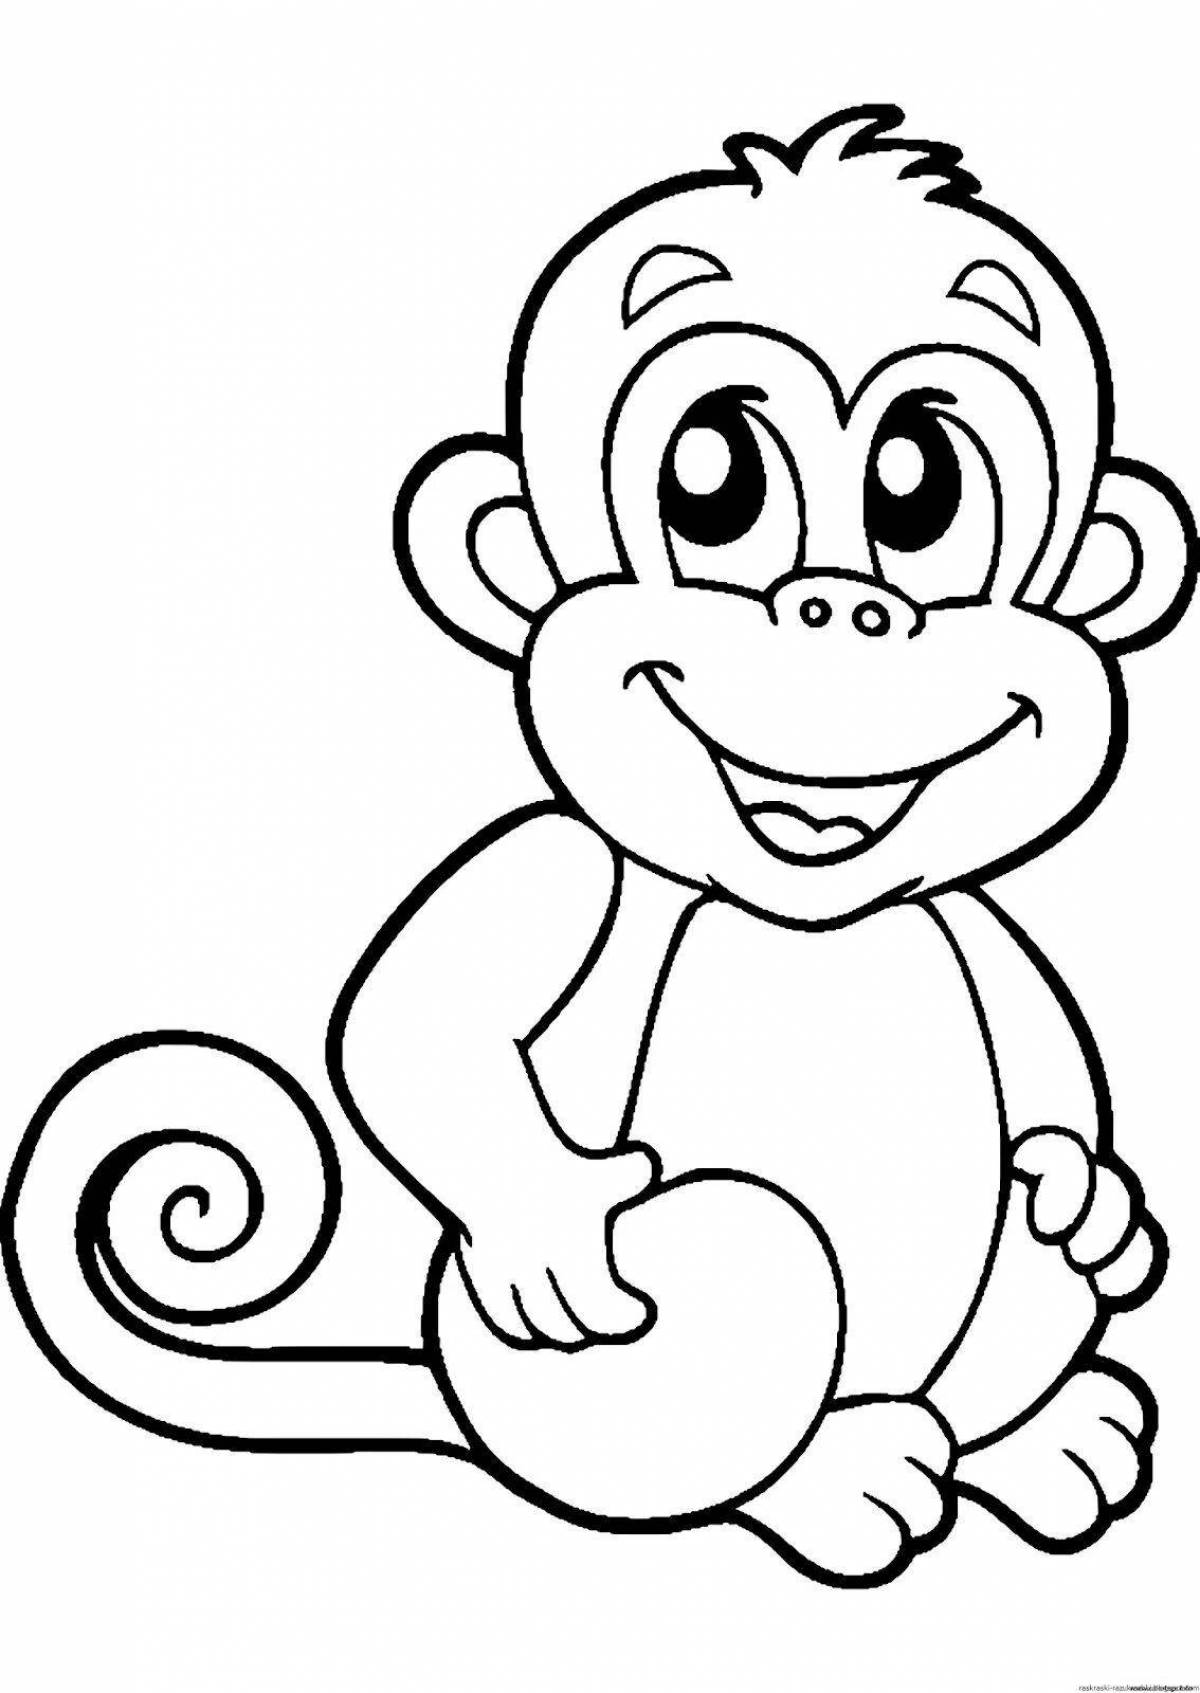 Joyful coloring monkey